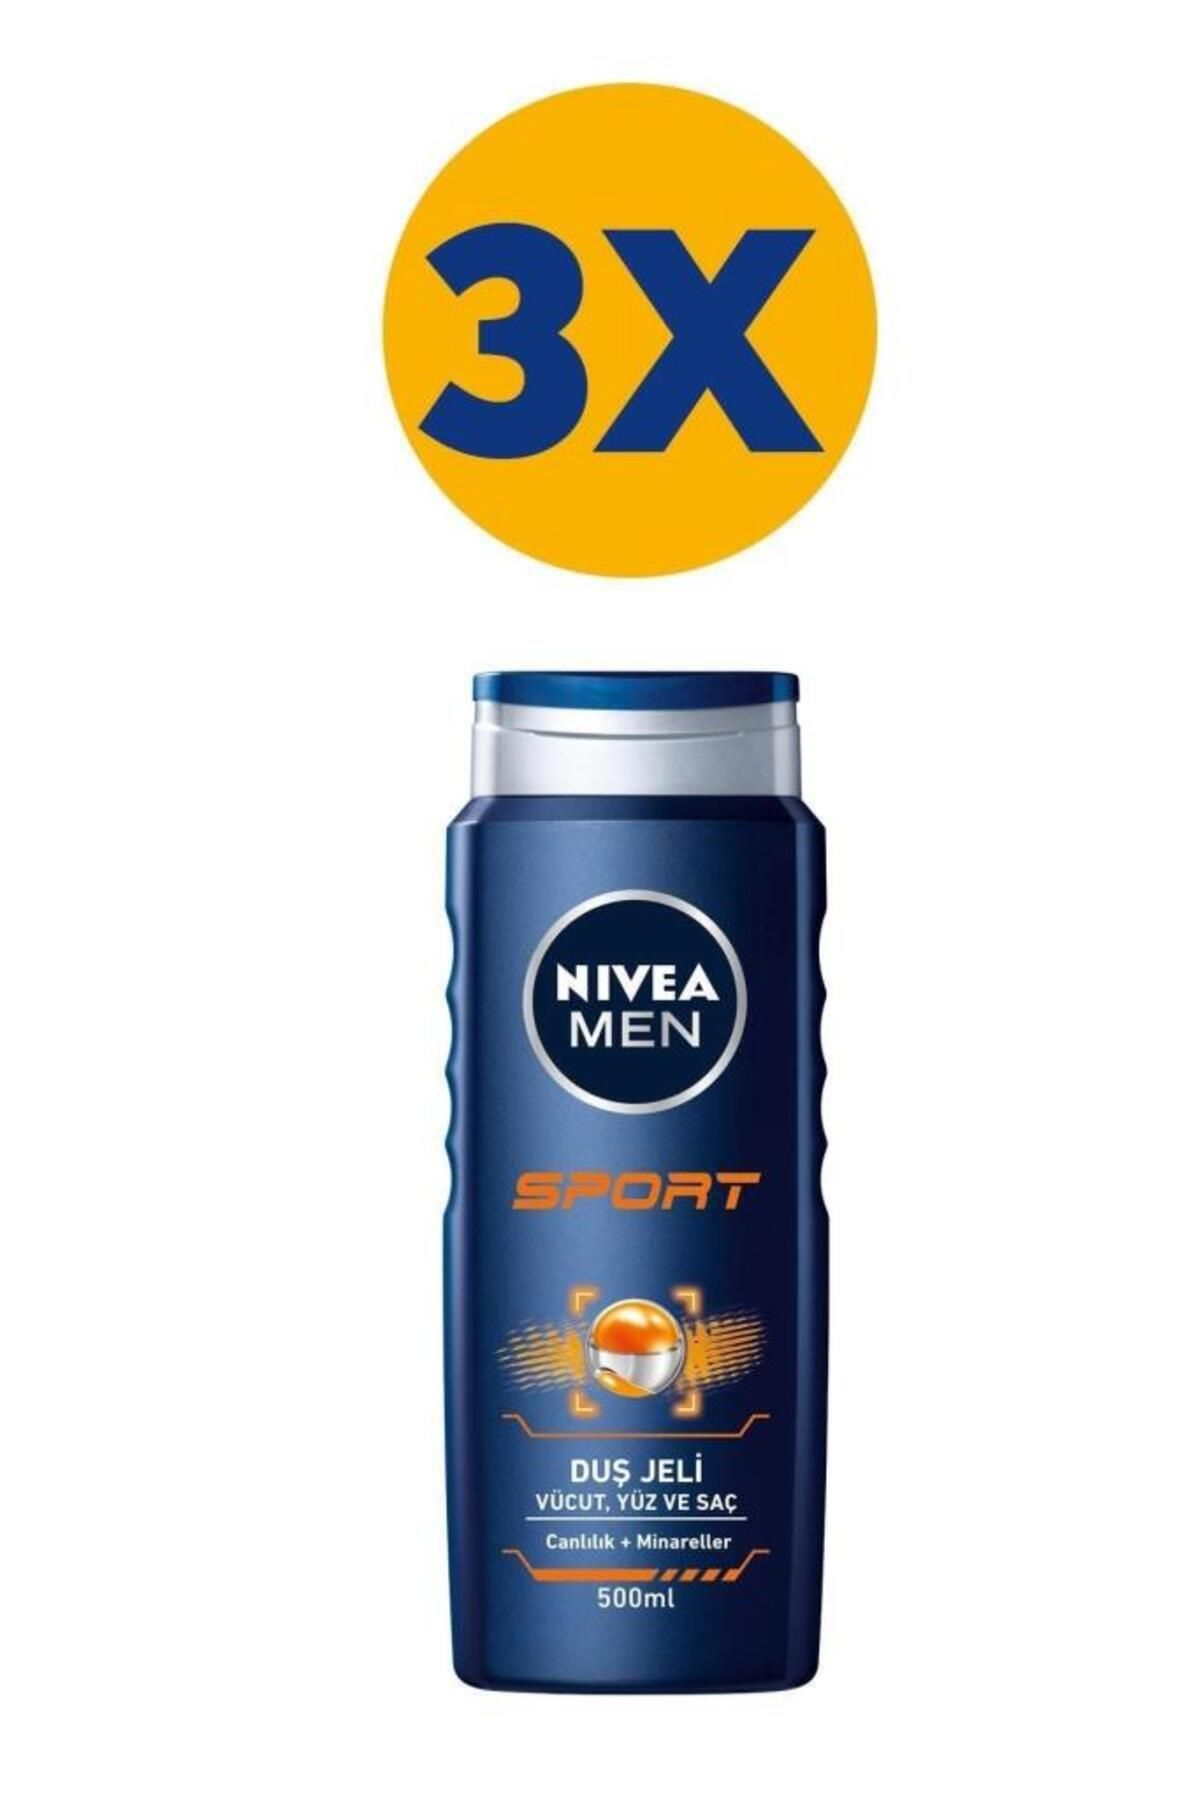 NIVEA MEN Erkek Banyo ve Duş Jeli Sport 500mlx3, Yüz,Vücut ve Saç İçin,Canlandırıcı Mineraller